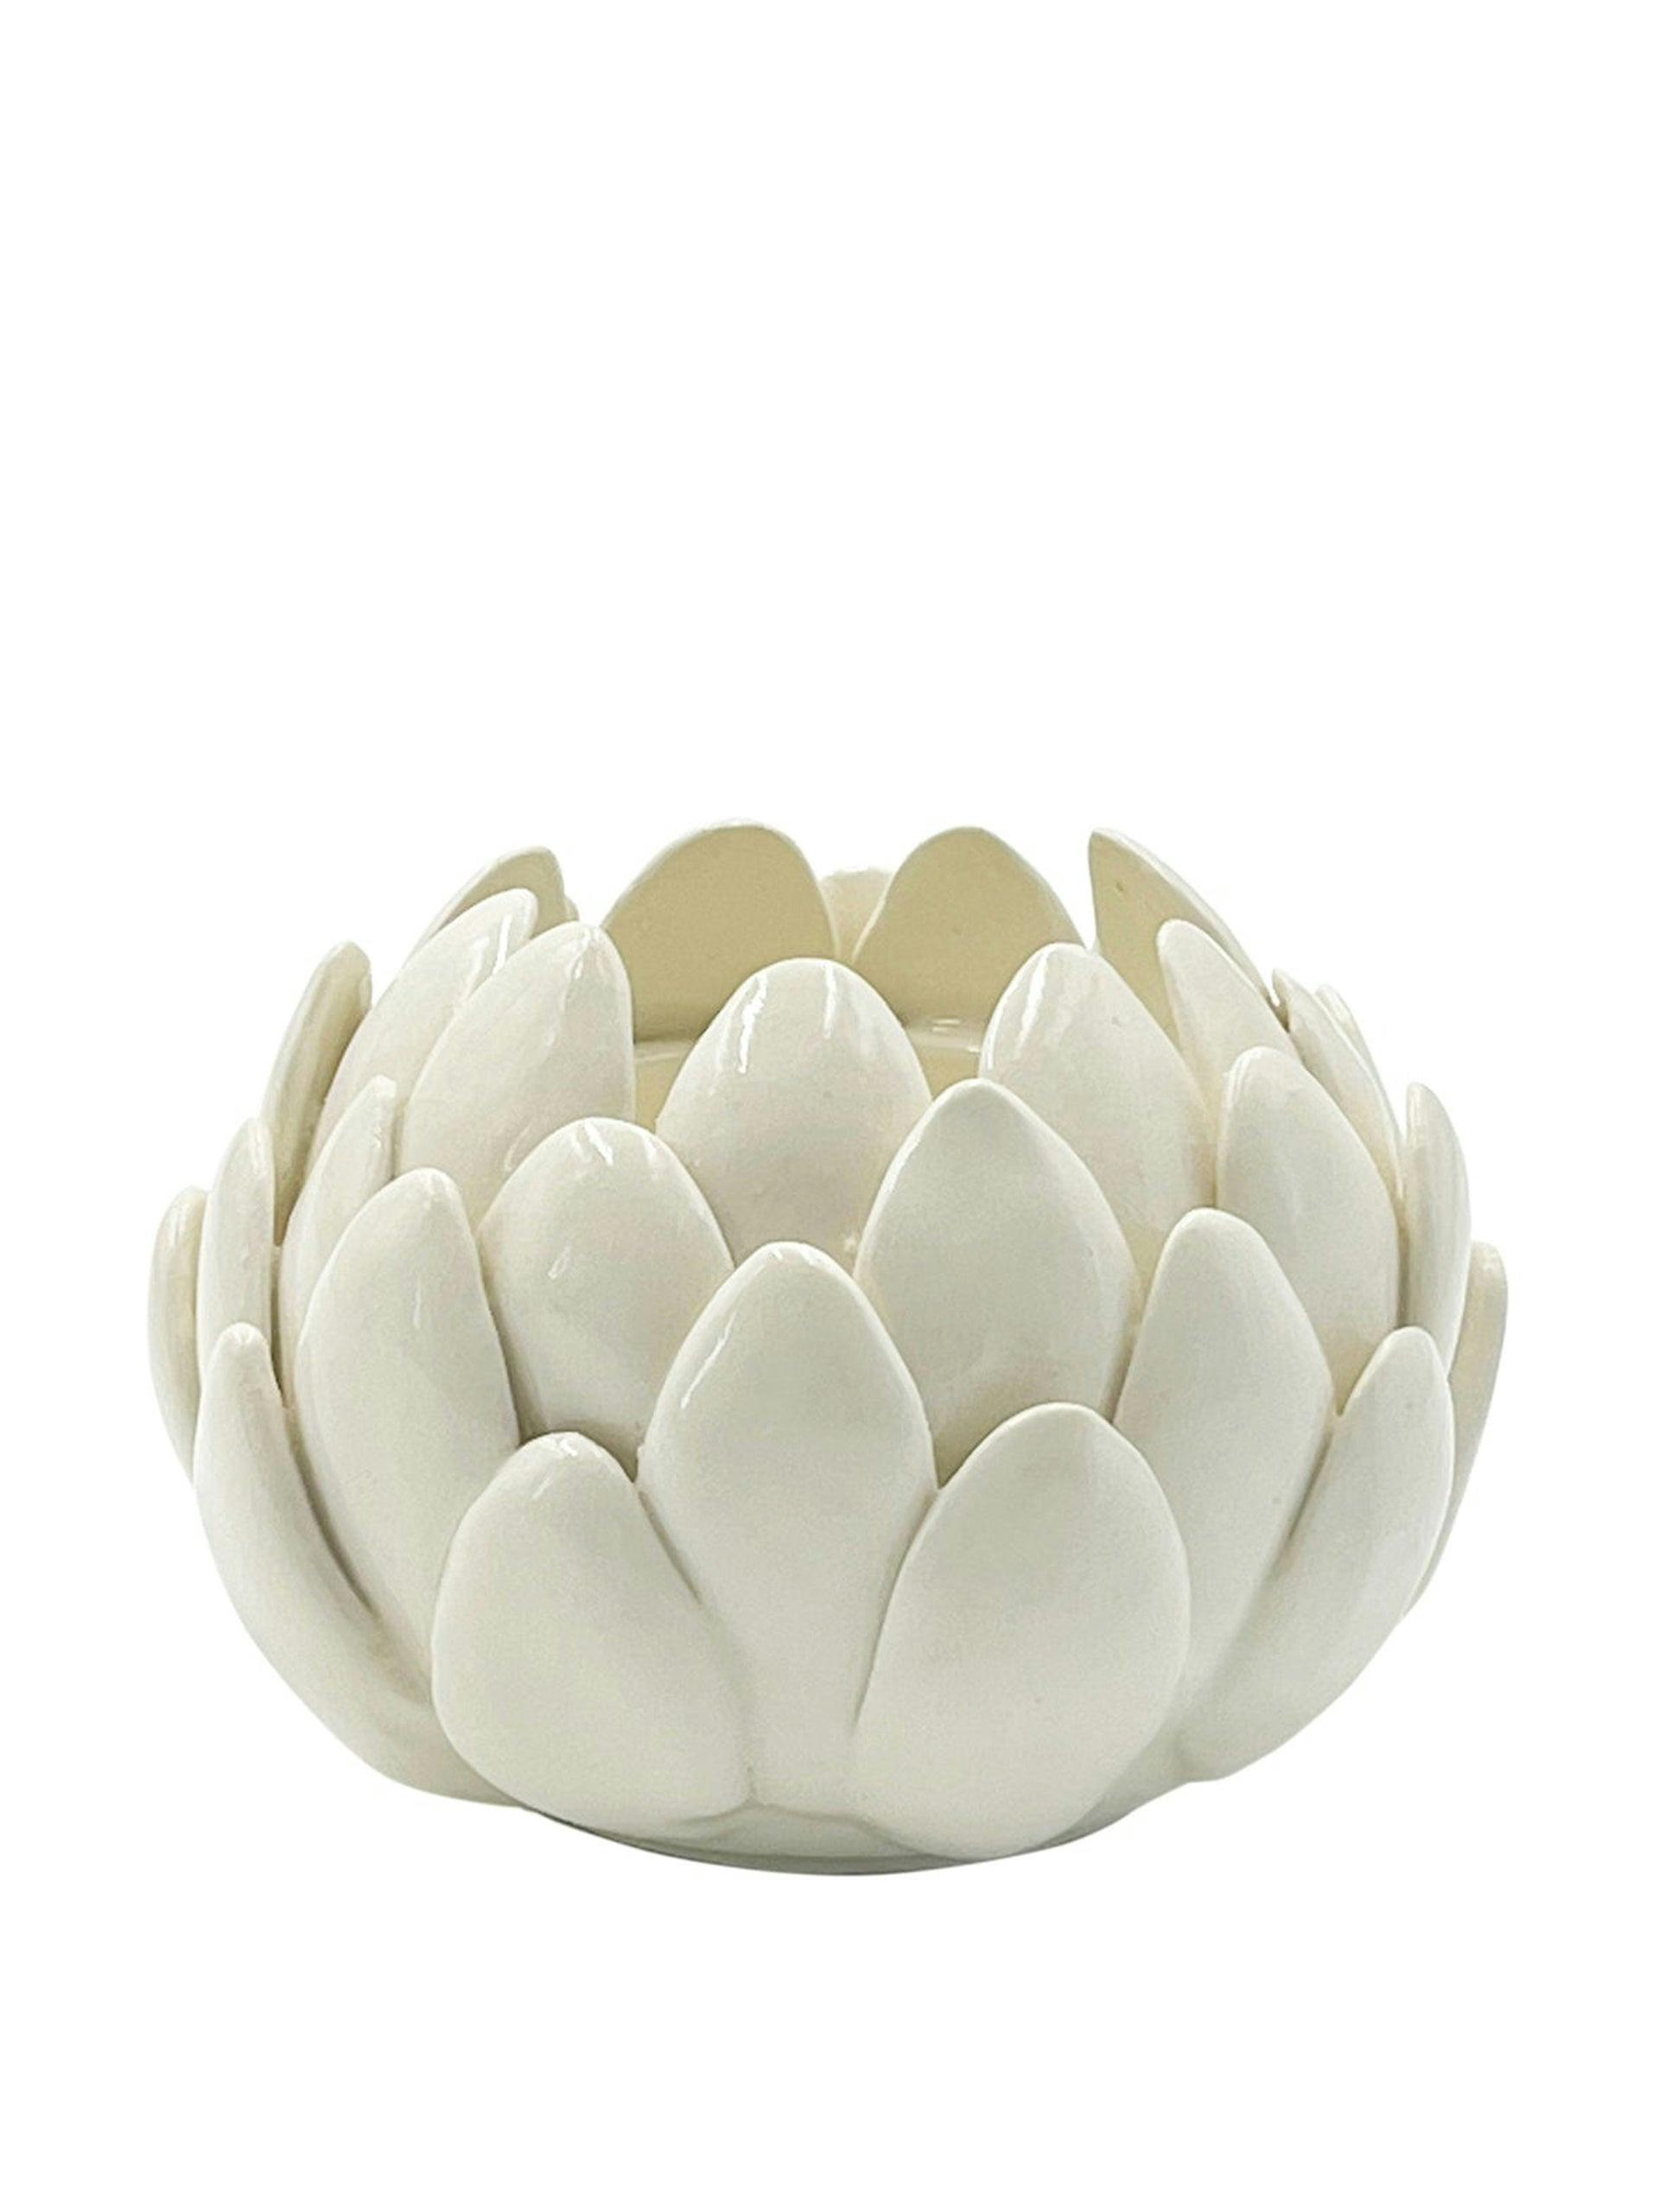 Artichoke bowl in cream (small)